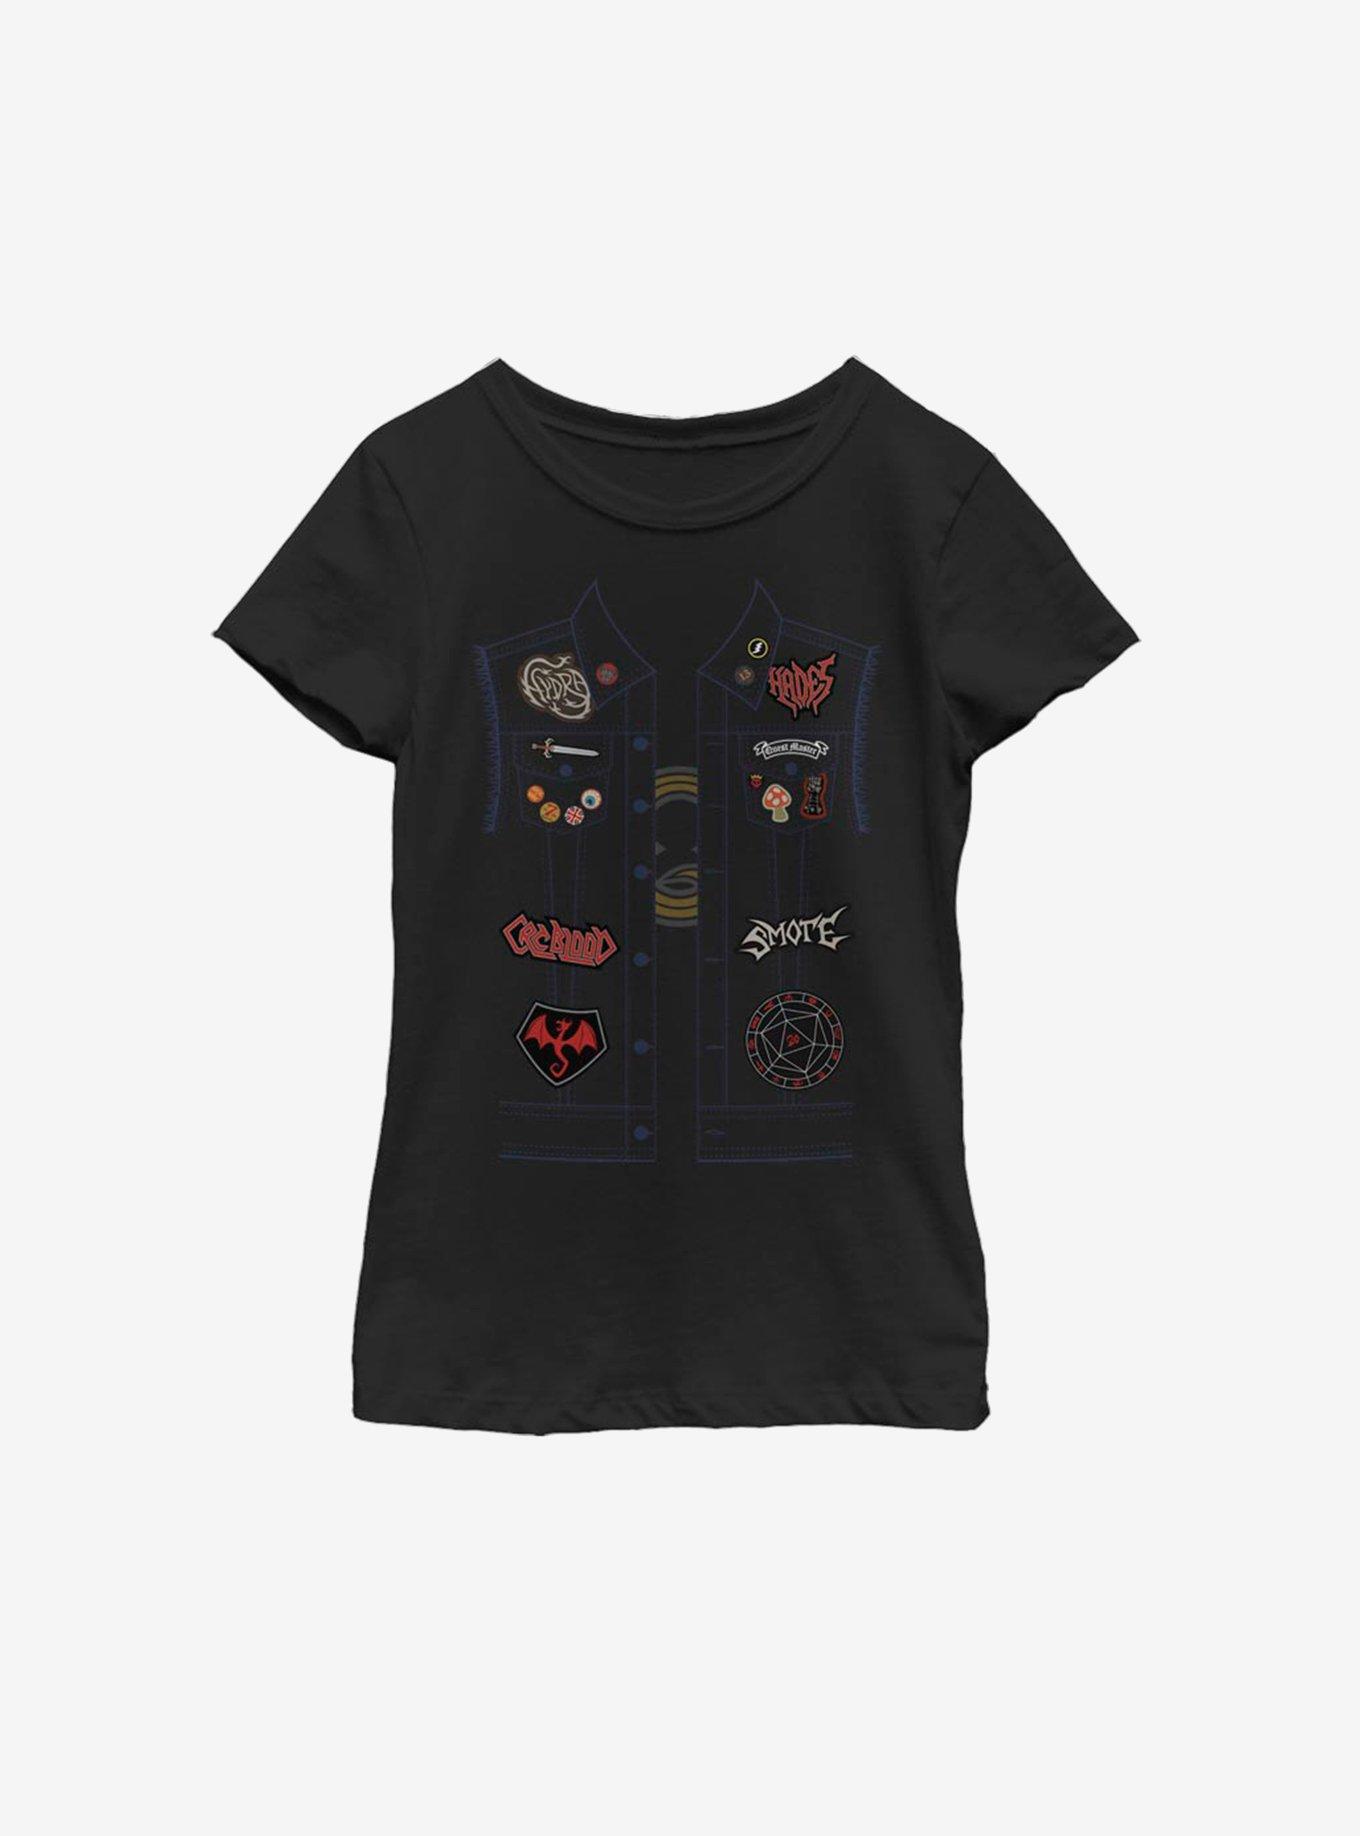 Disney Pixar Onward Barley Vest Youth Girls T-Shirt, BLACK, hi-res